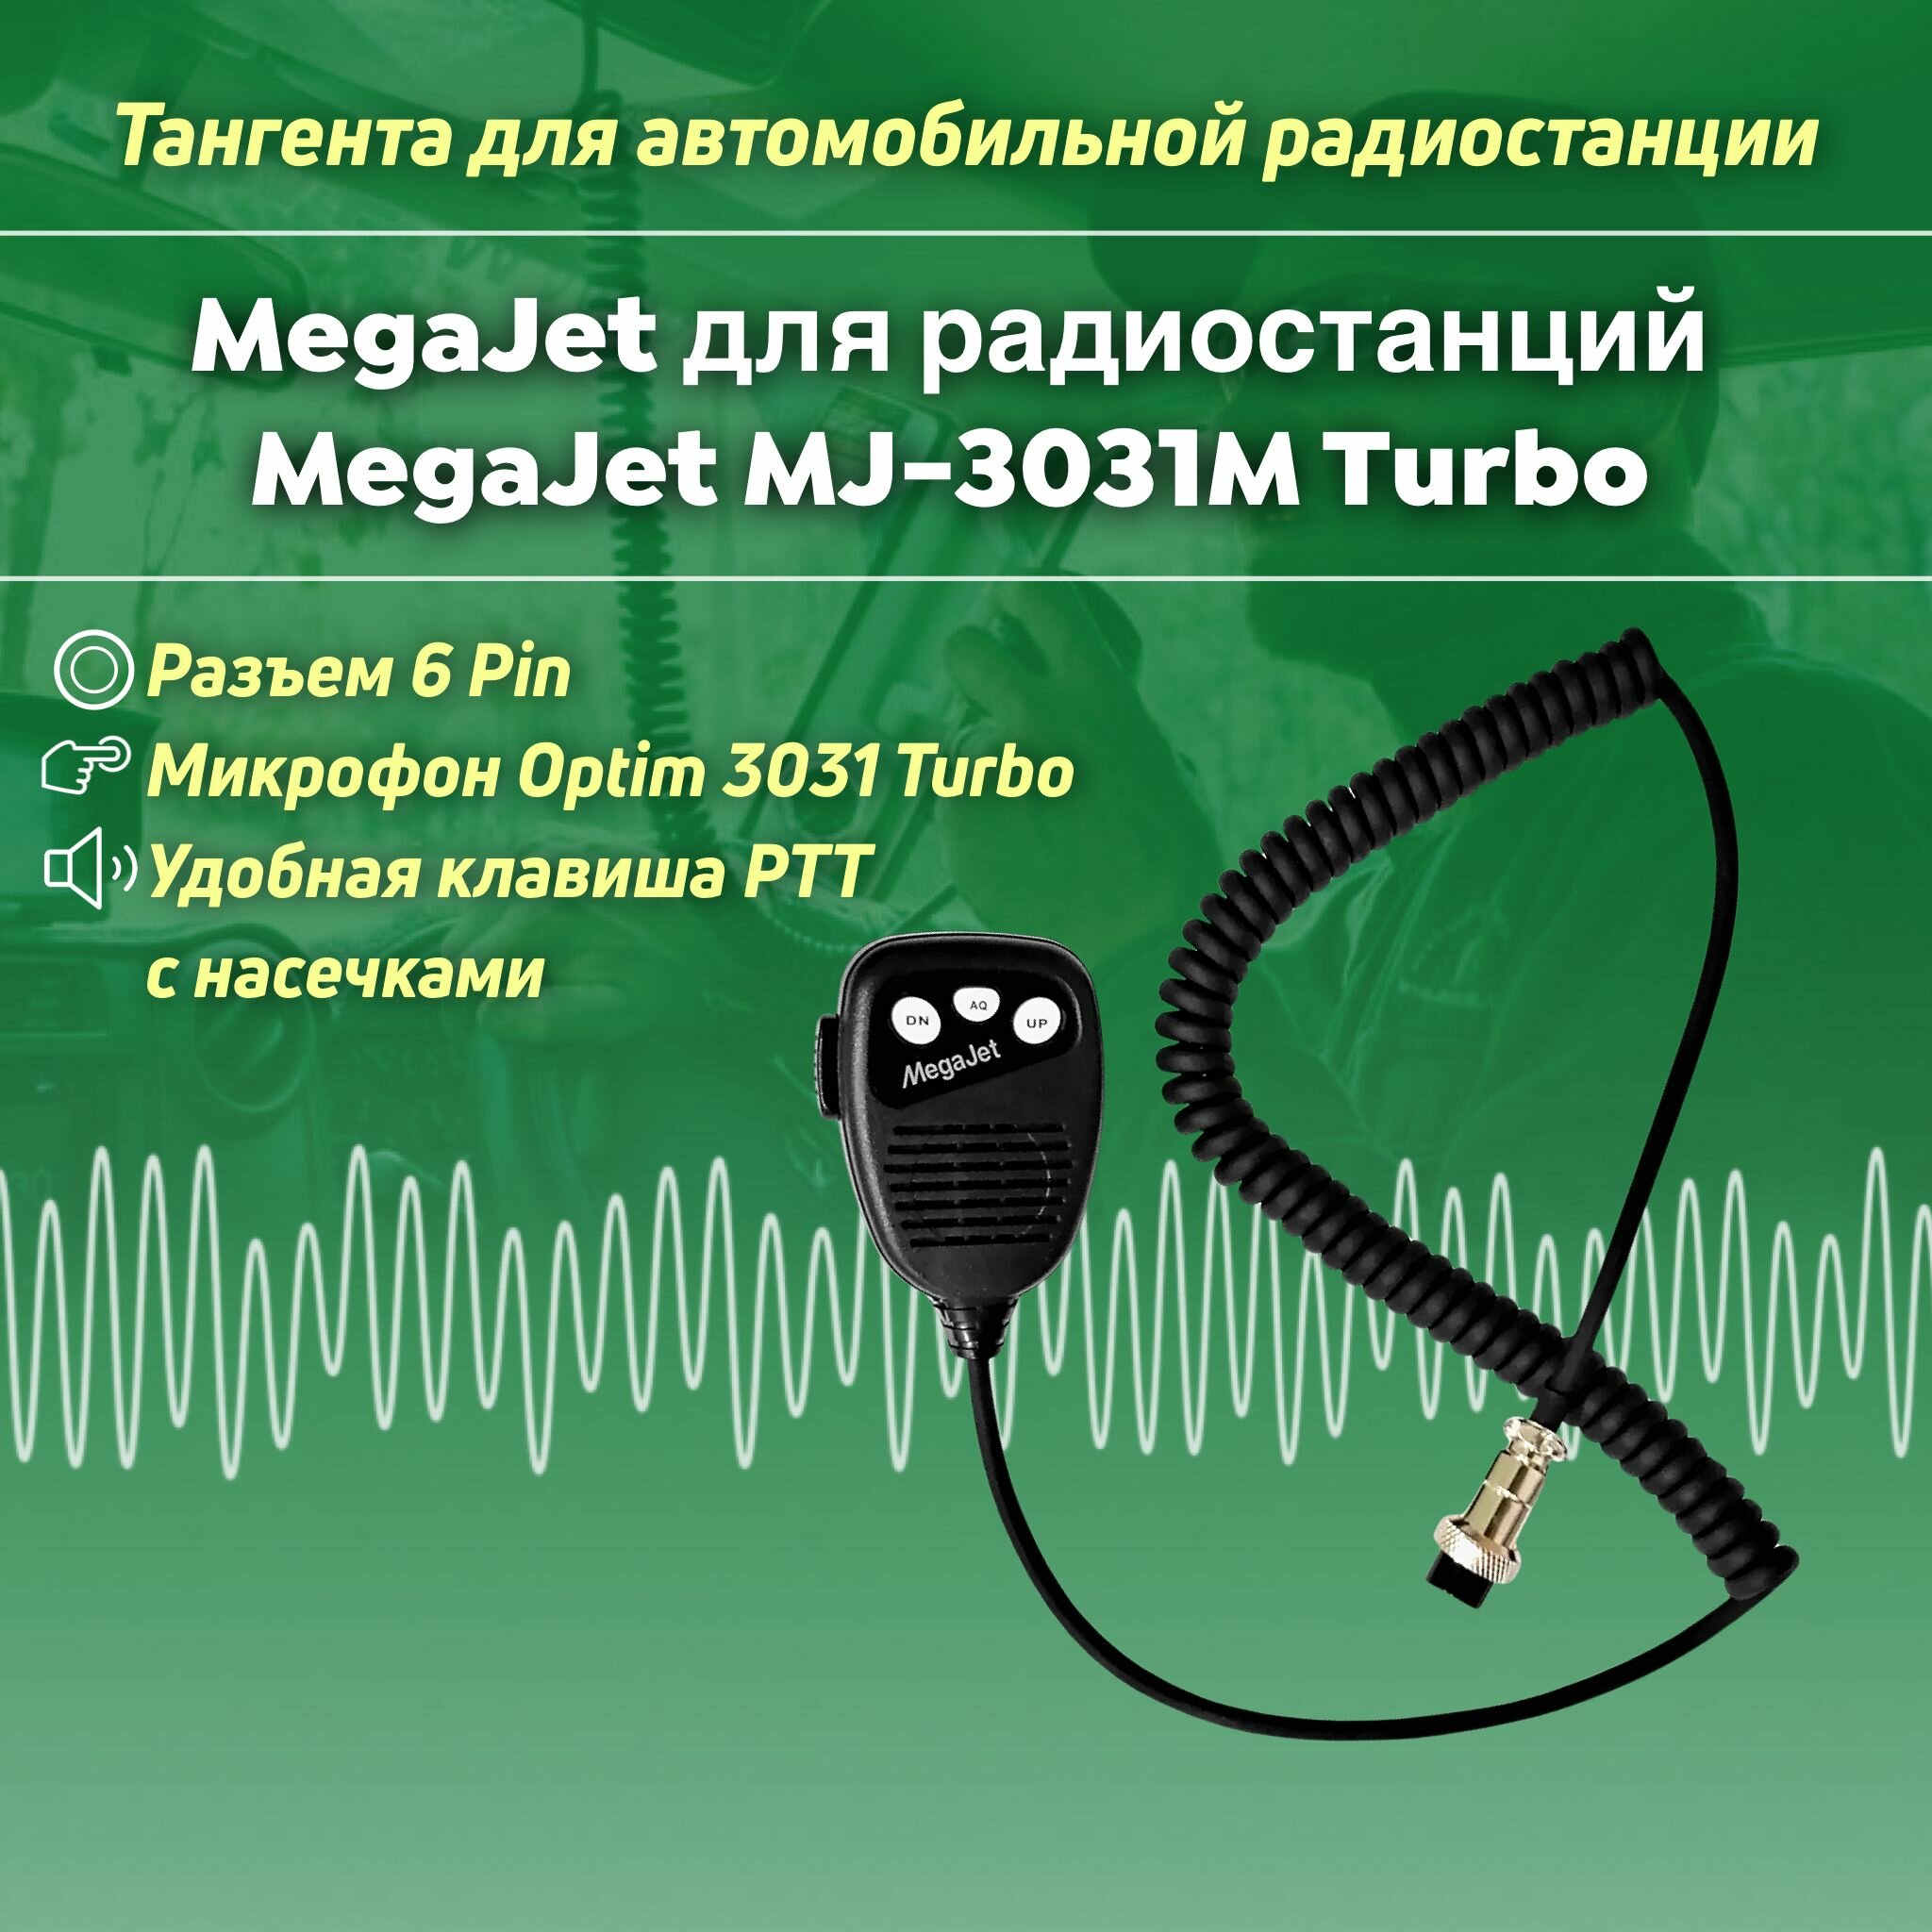 Тангента для радиостанции MegaJet MJ-3031M Turbo